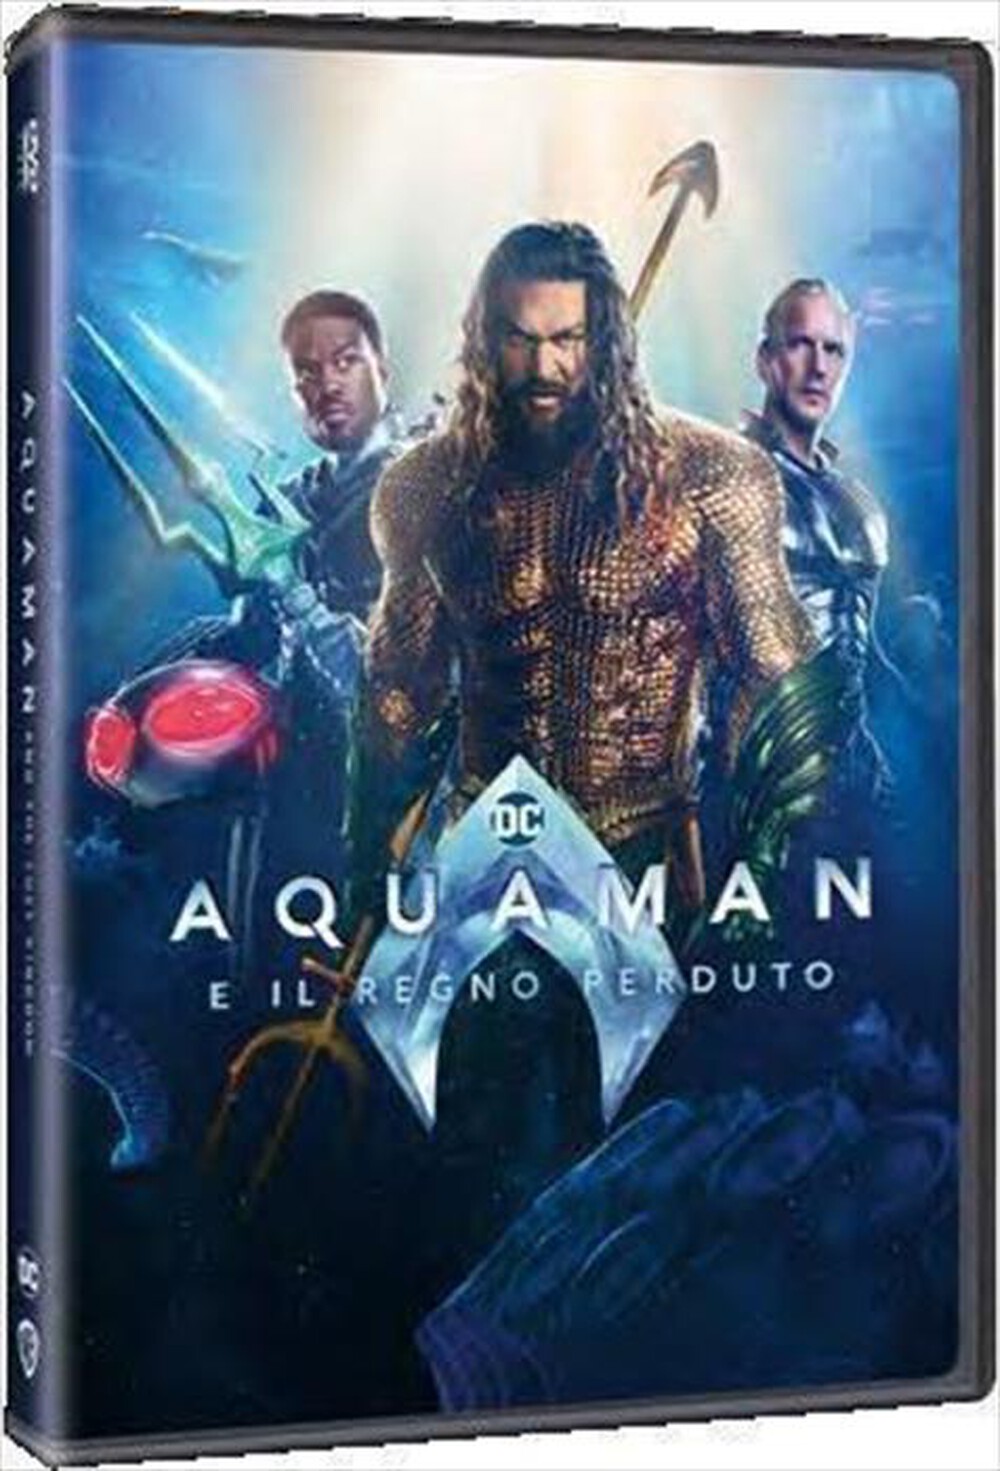 "WARNER HOME VIDEO - Aquaman E Il Regno Perduto"